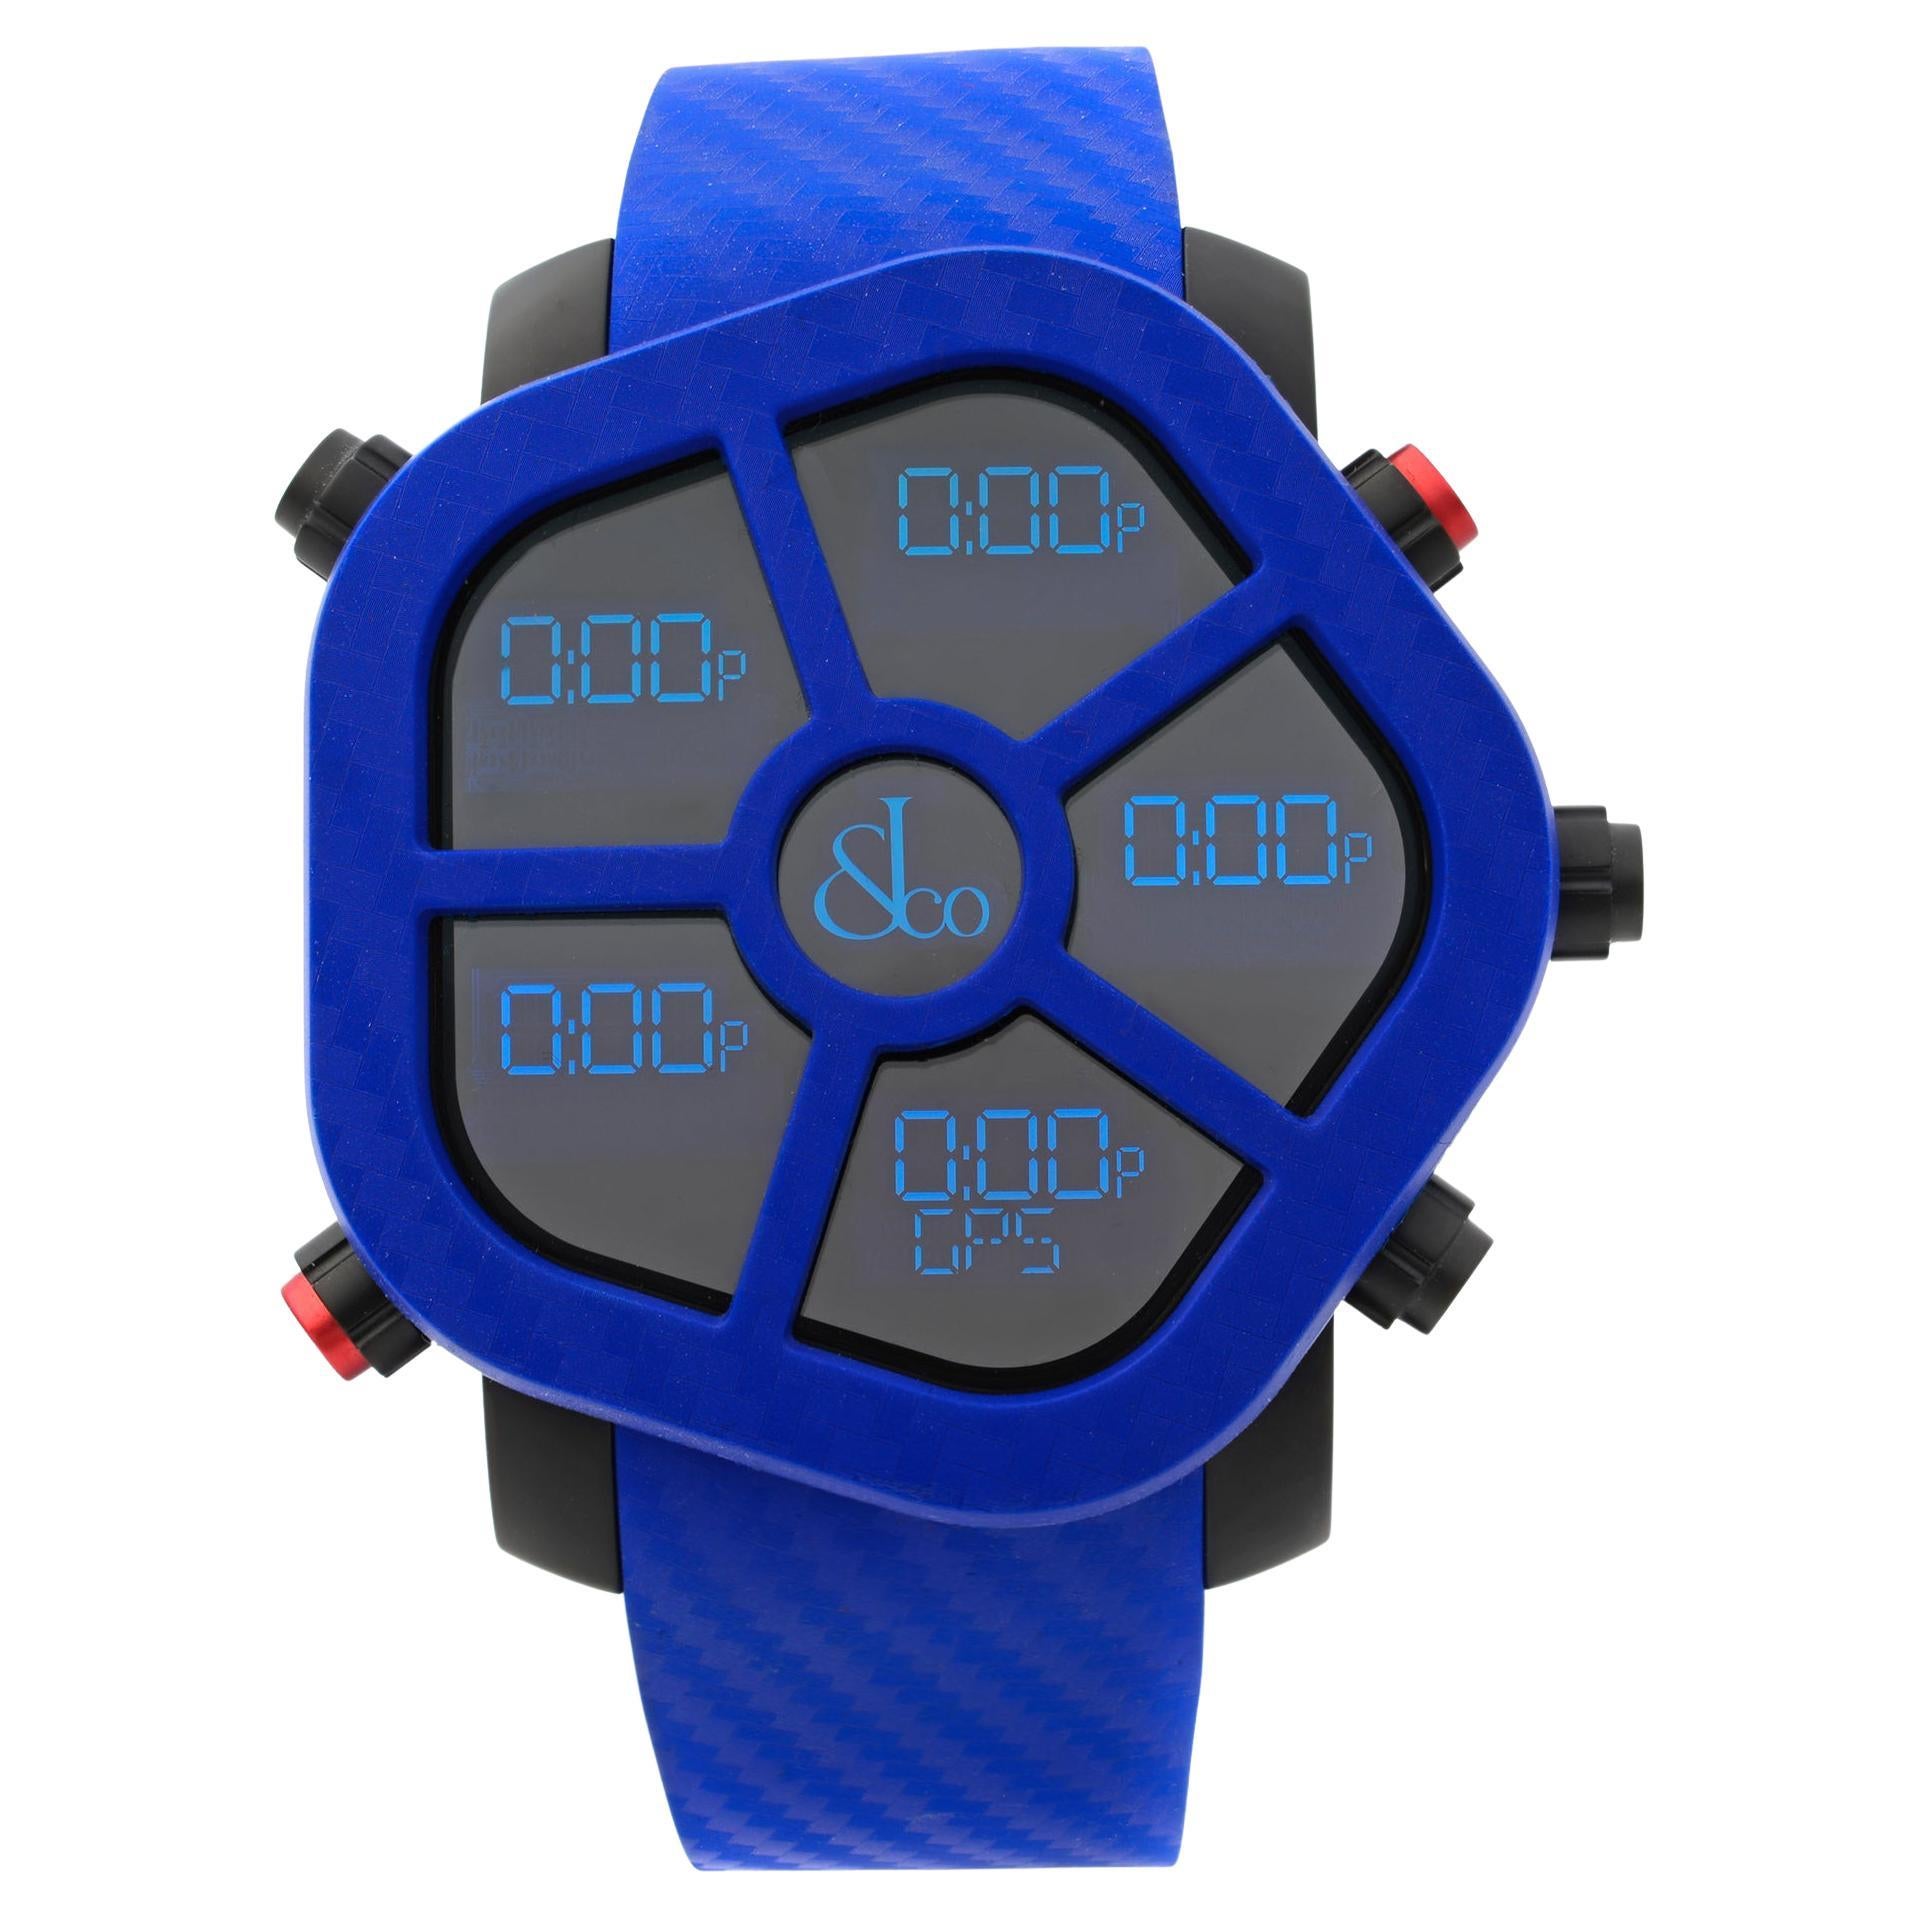 Jacob & Co. Ghost Carbon Bezel Blue Analog Quartz Men Watch GH100.11.NS.PC.ANE4D For Sale